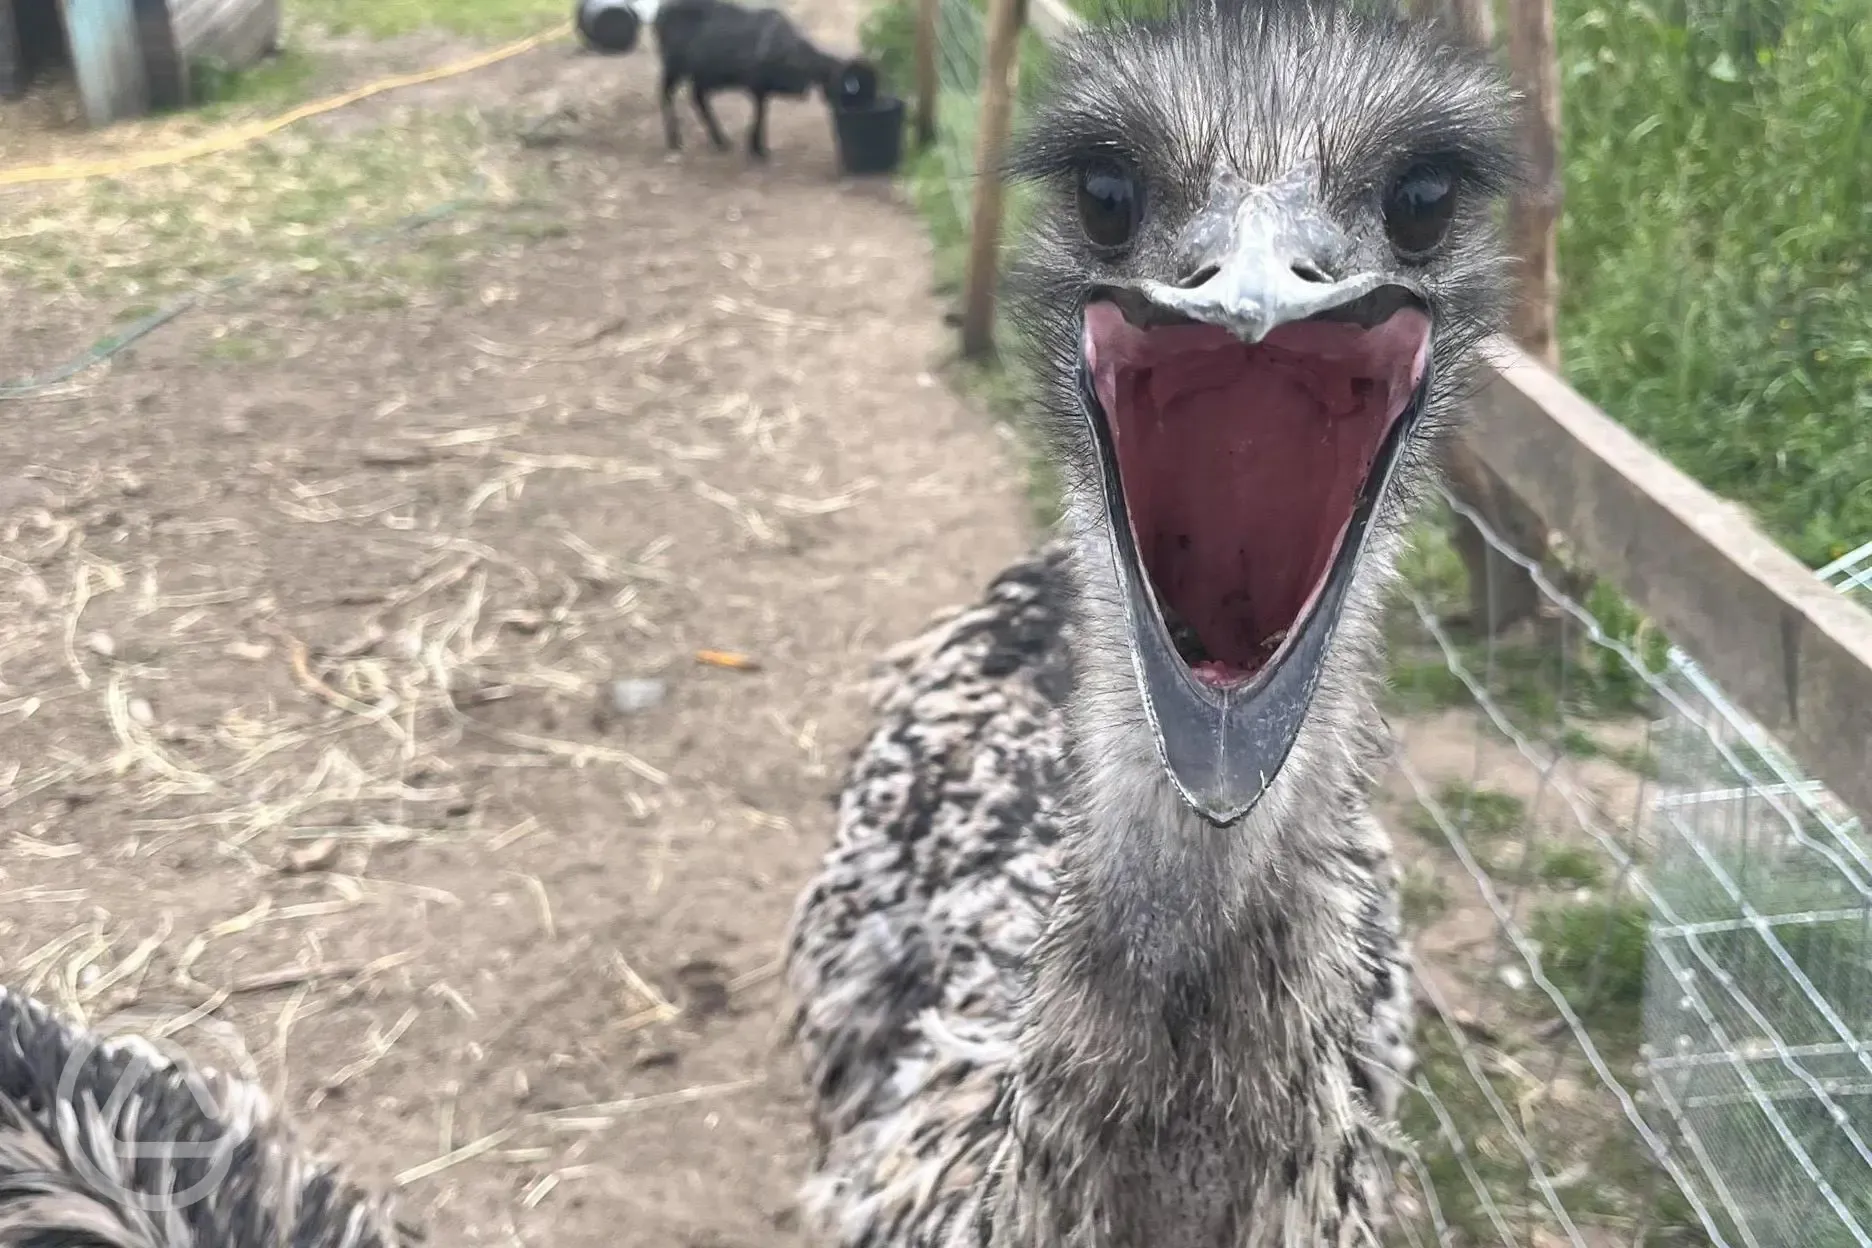 Emu at our mini farm!